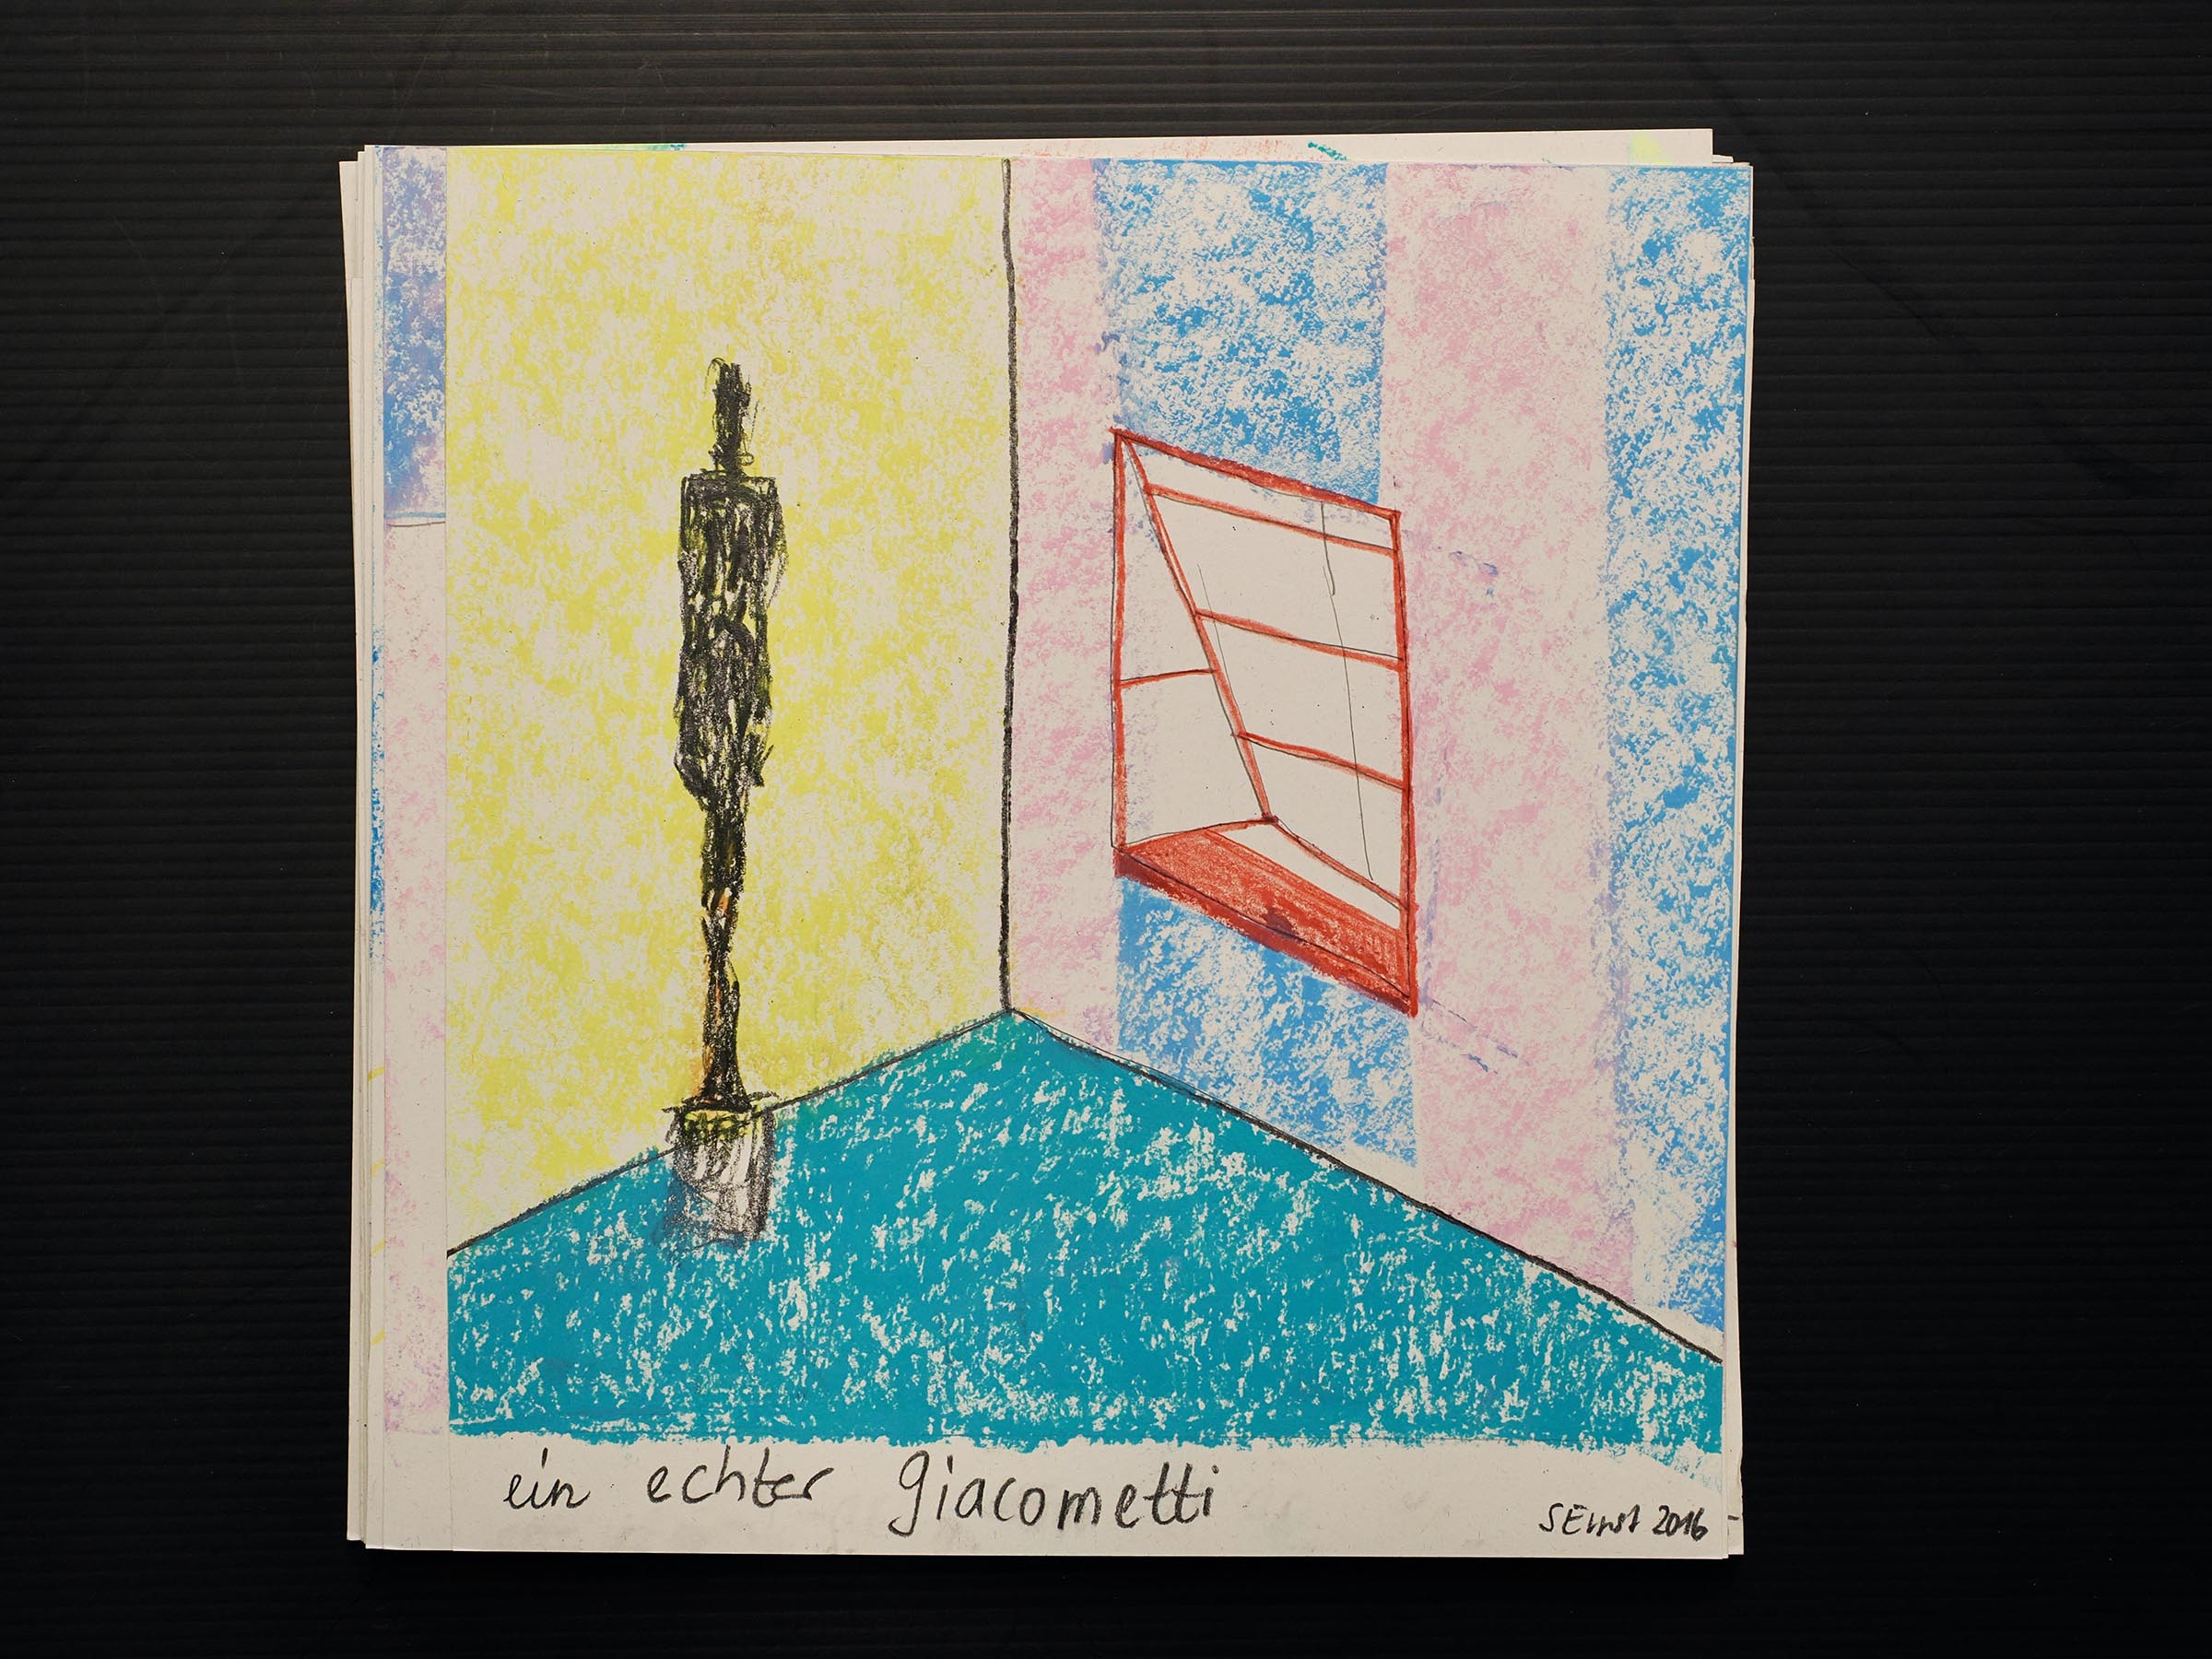 Bleistift, Farbstift, Ölkreide auf Papier. 25 x 23 cm.